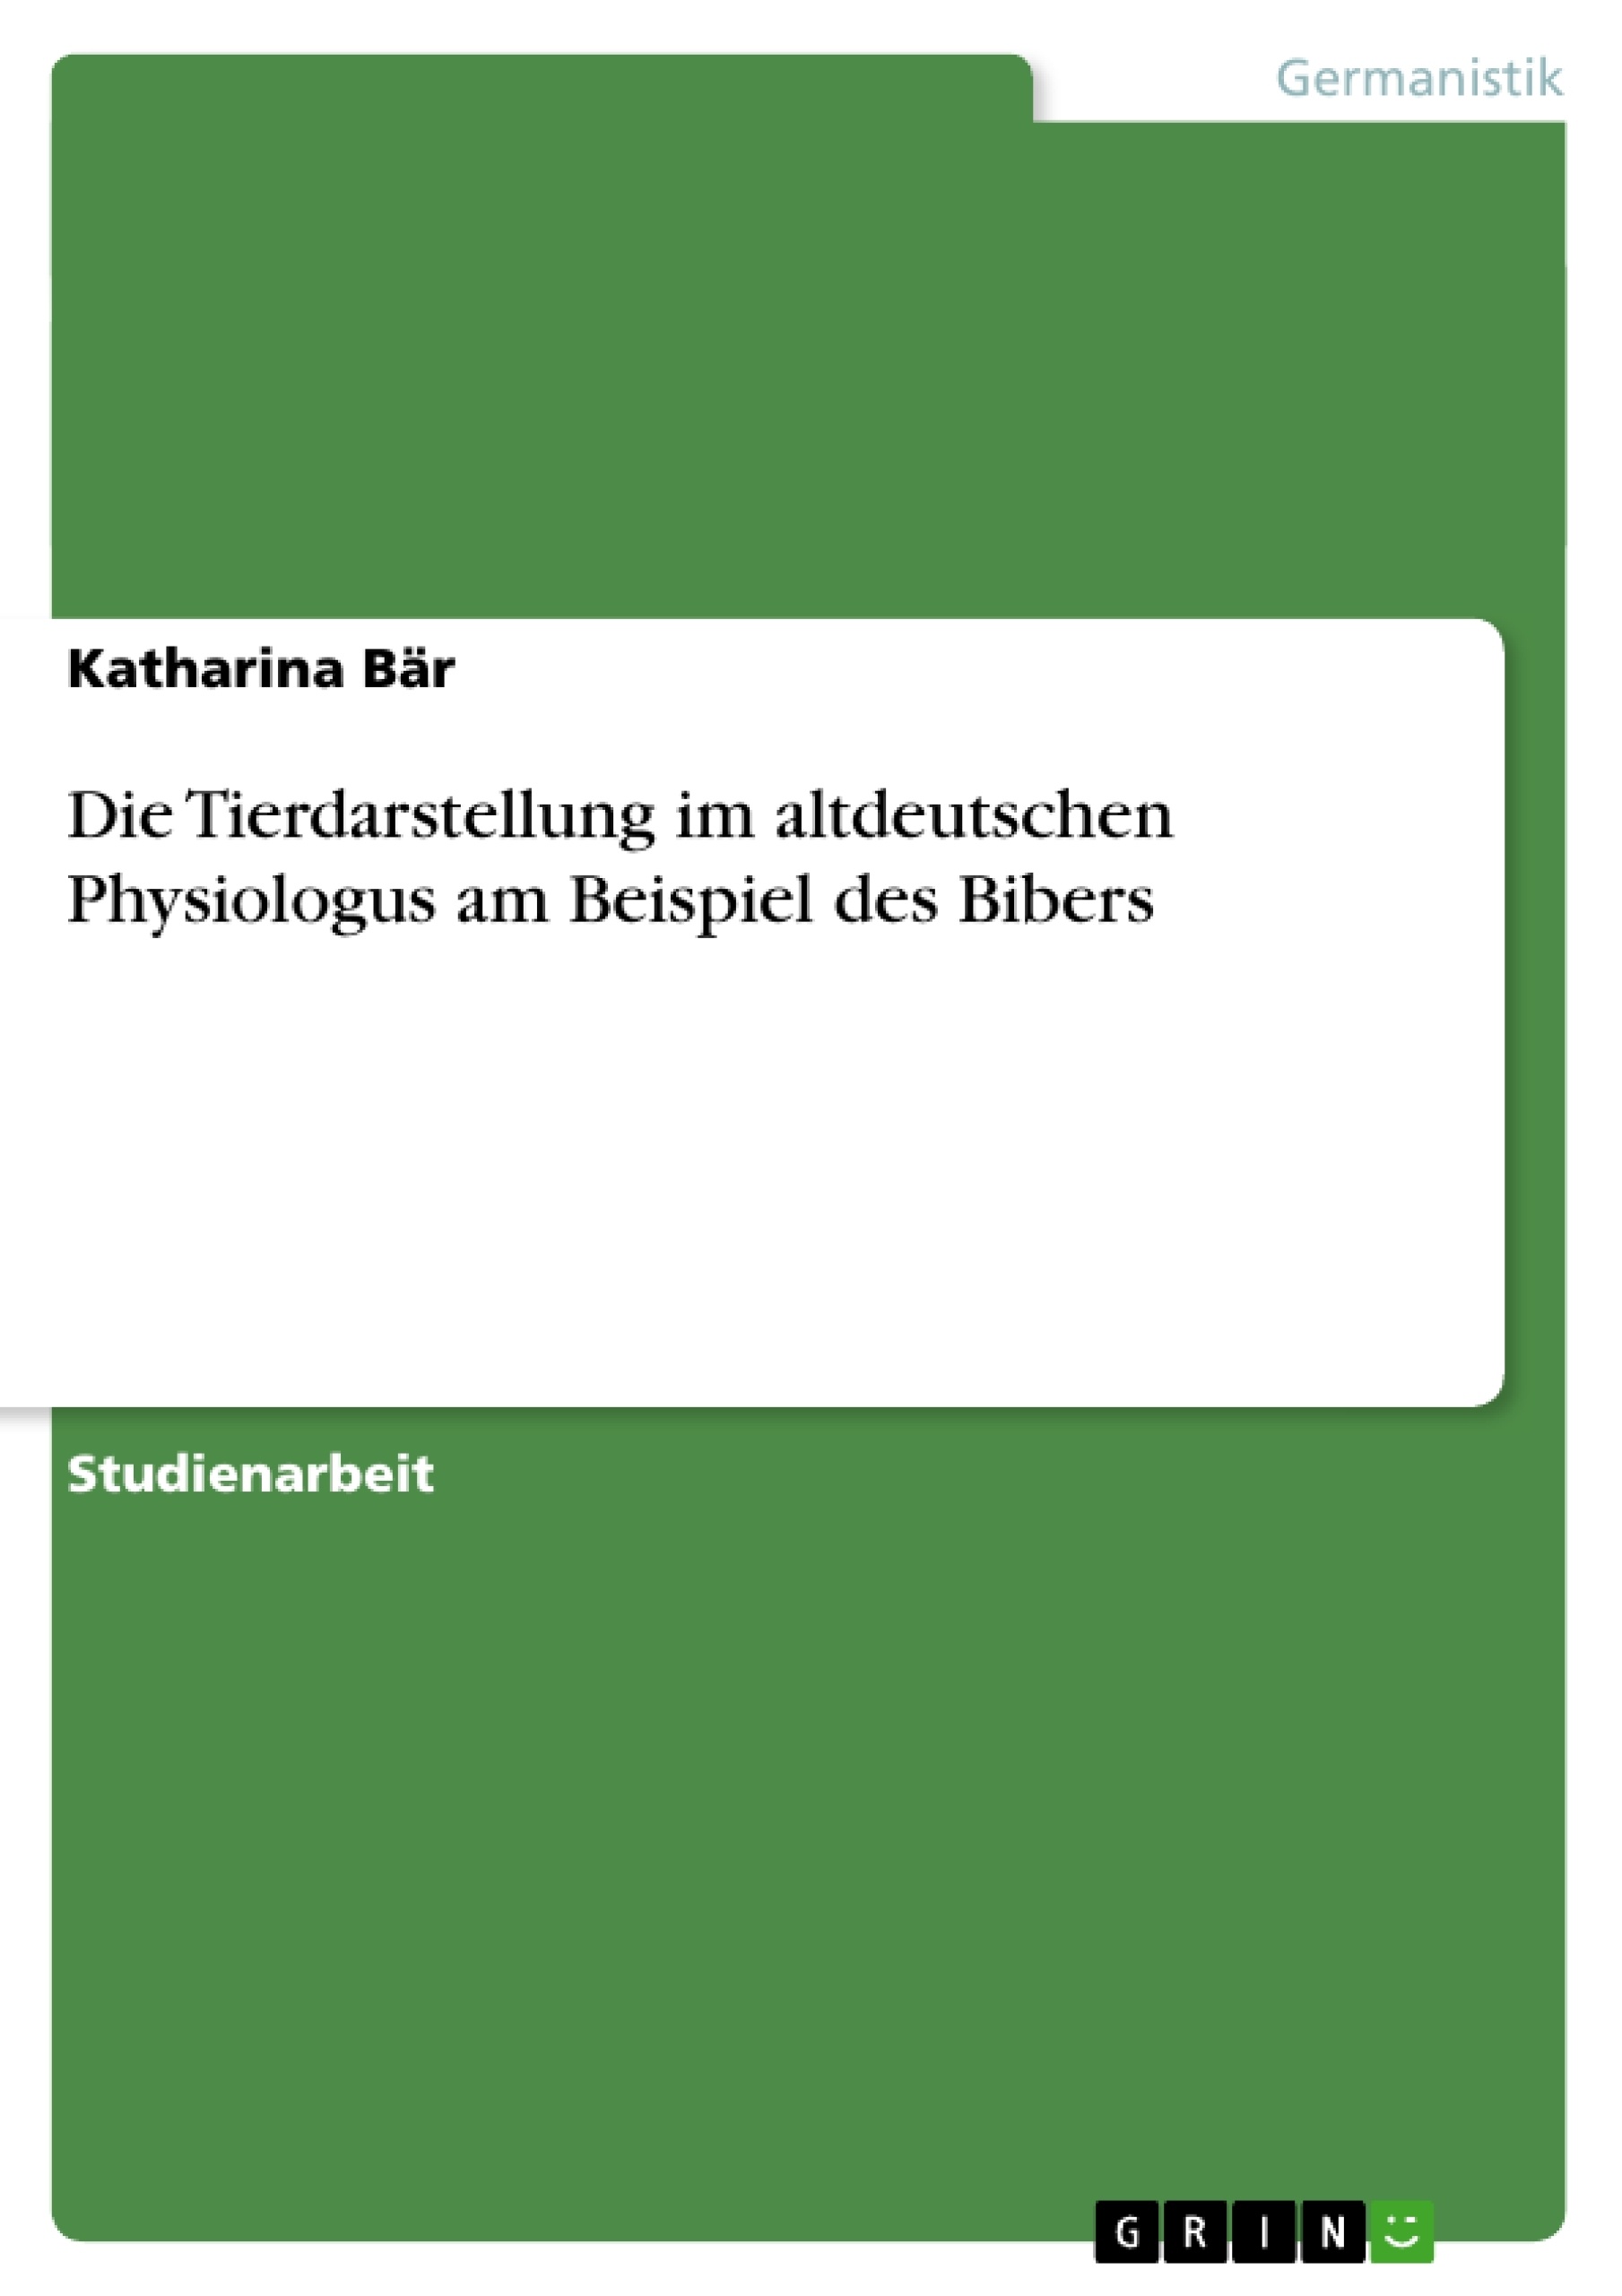 Title: Die Tierdarstellung im altdeutschen Physiologus am Beispiel des Bibers